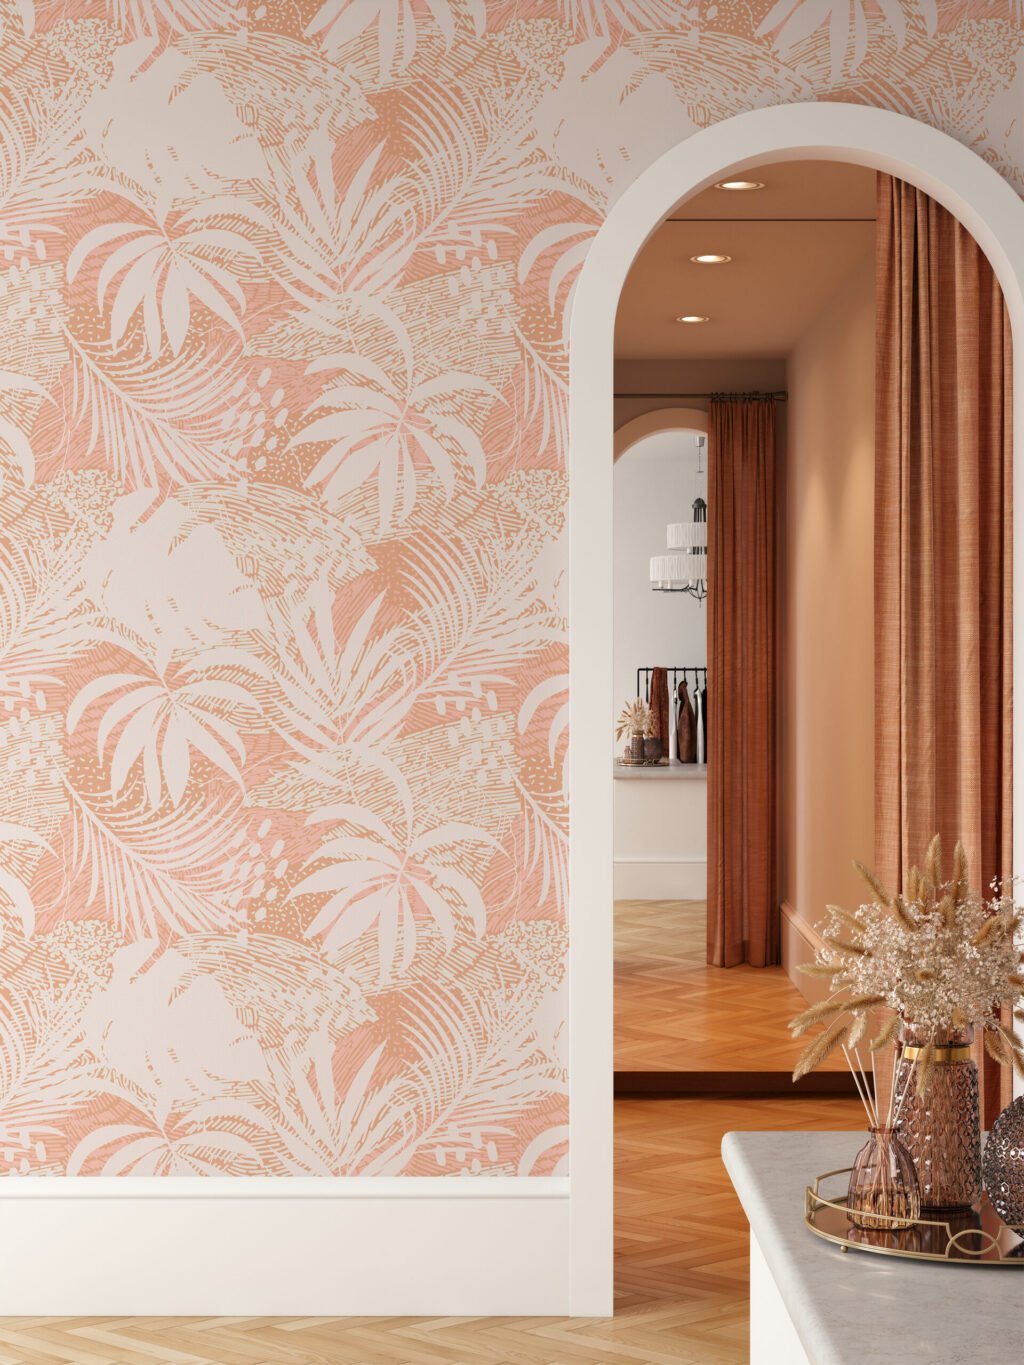 Büyük Tropikal Palmiye Yaprak Silueti Duvar Kağıdı, Modern Şık Duvar Posteri Çiçekli Duvar Kağıtları 2